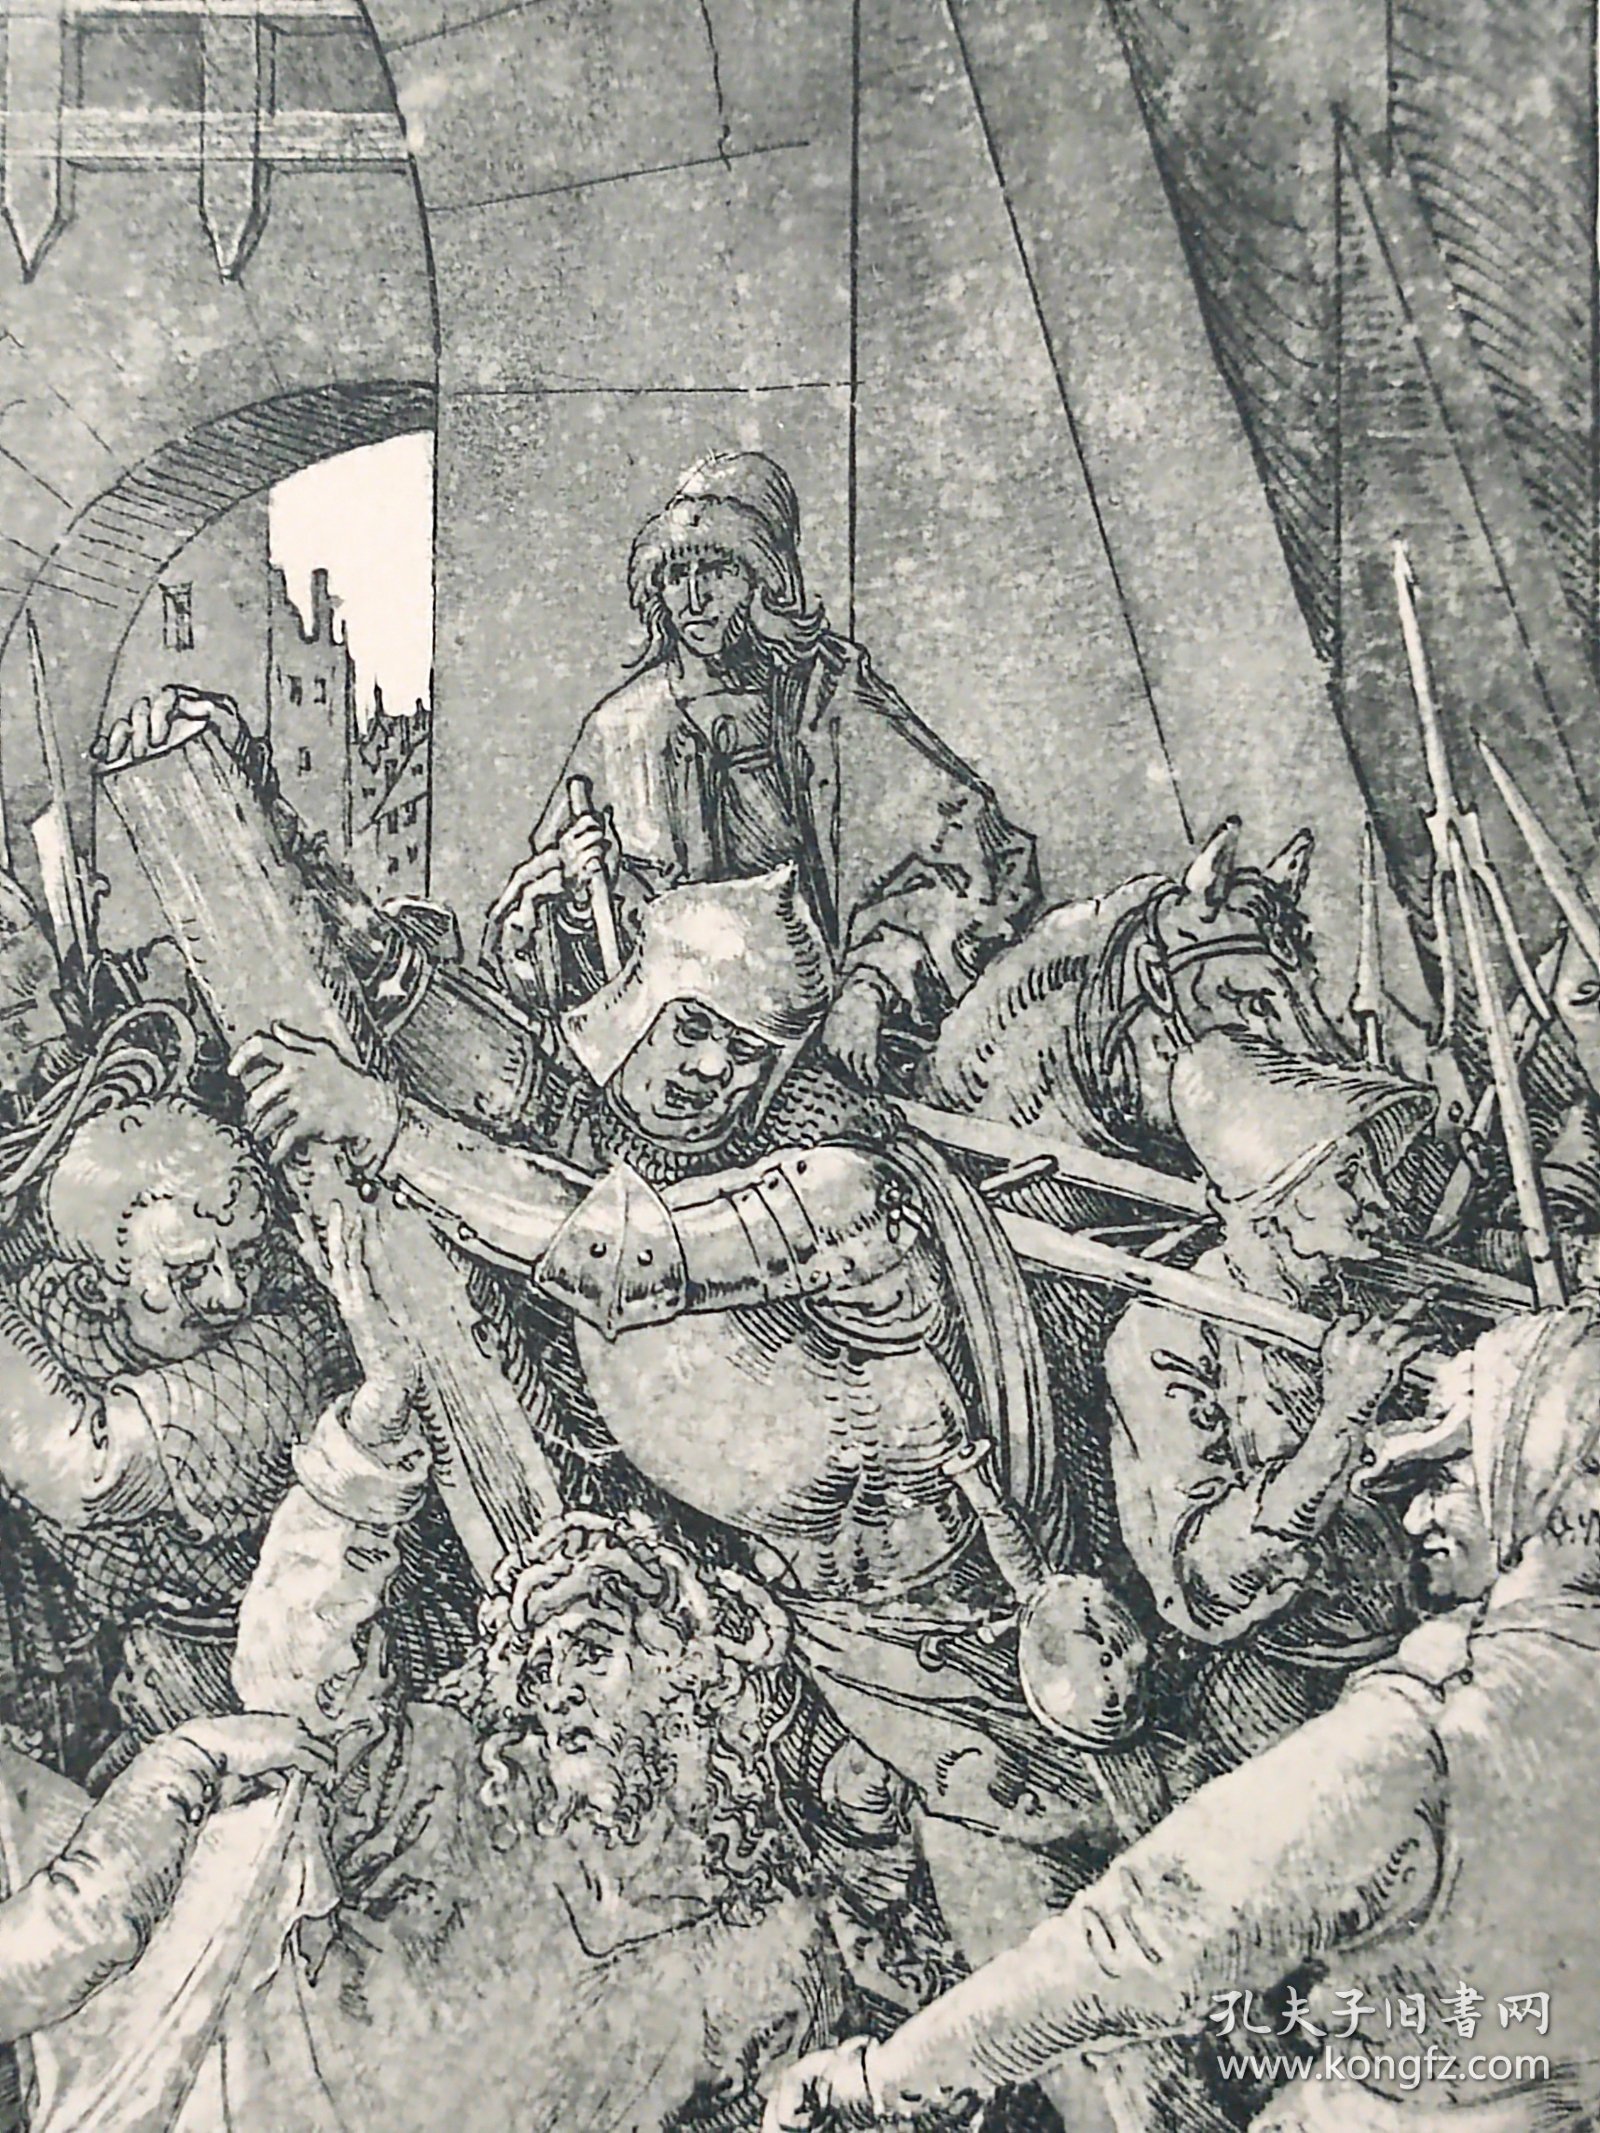 【丢勒】1896年 珂罗版 版画《CHRISTUS FALLT UNTER DEM KREUZE》 纸张36.5×29厘米